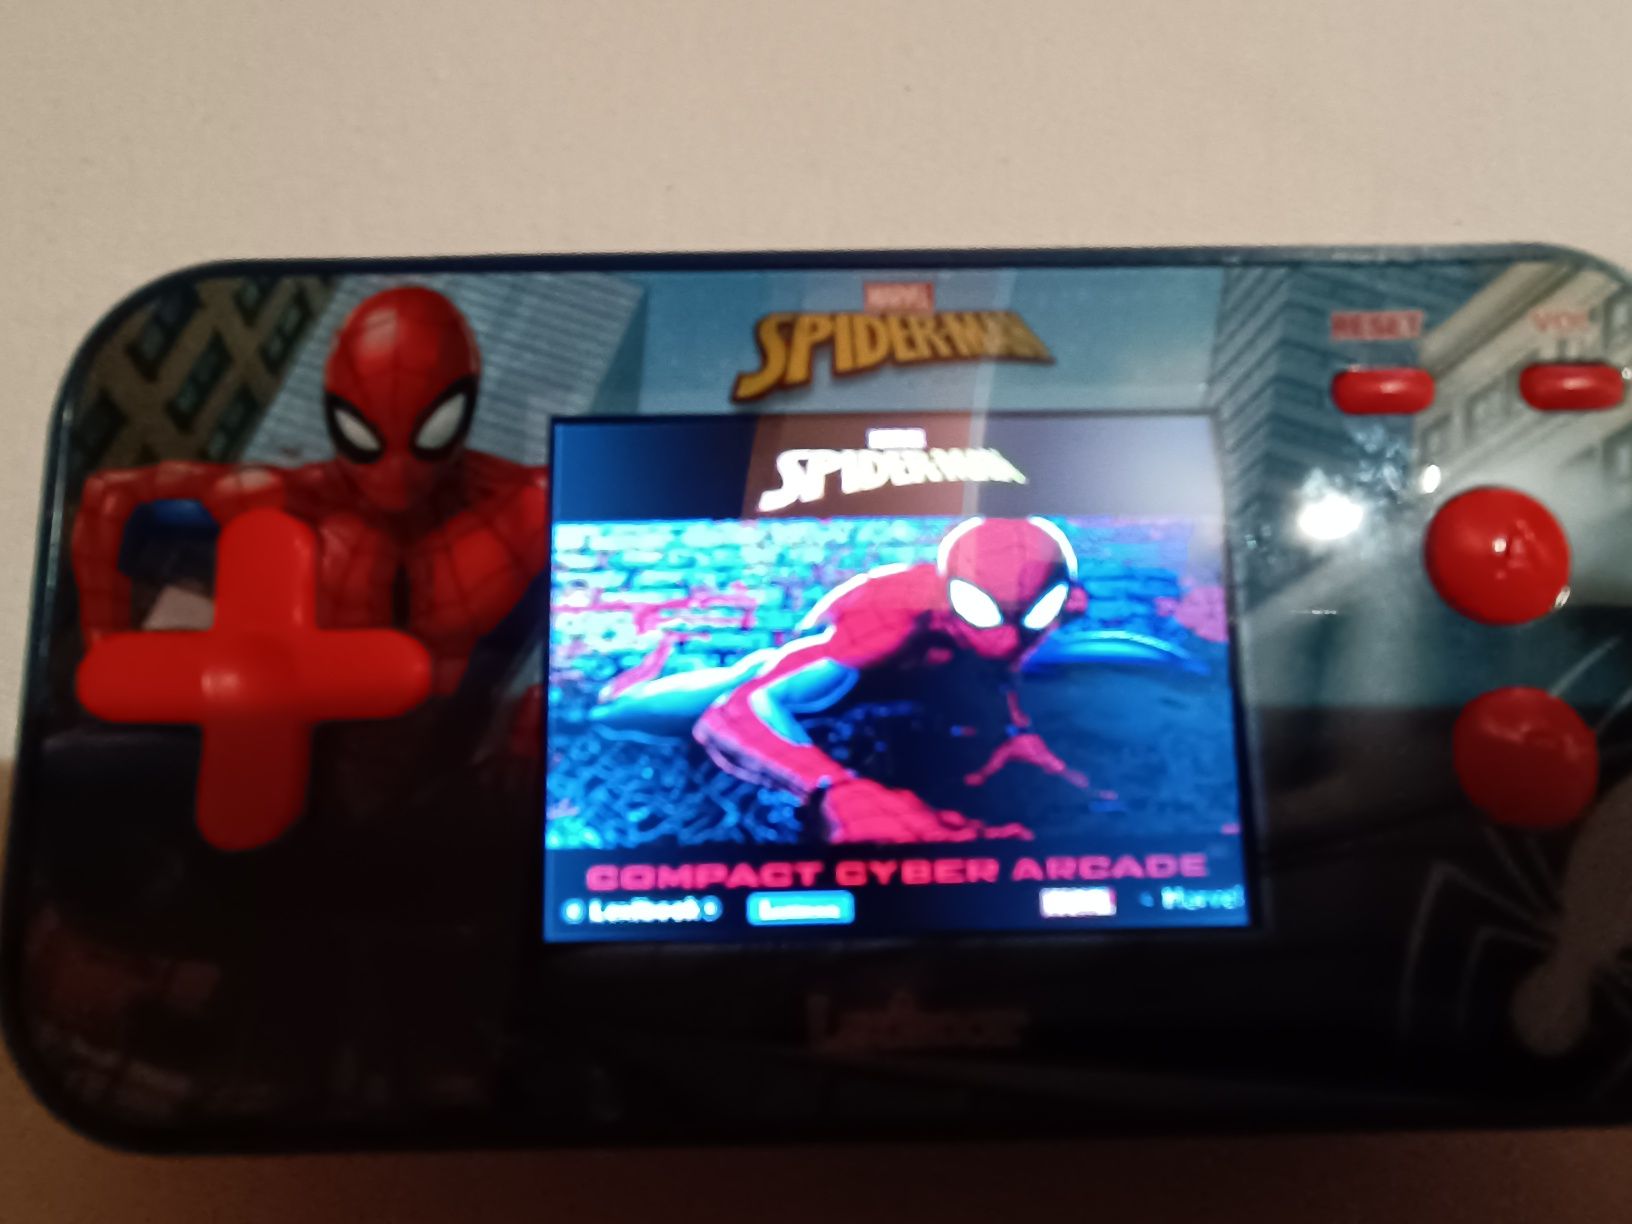 LEXIBOOK Spider Man Cyber Arcade Pocket JL2367SP